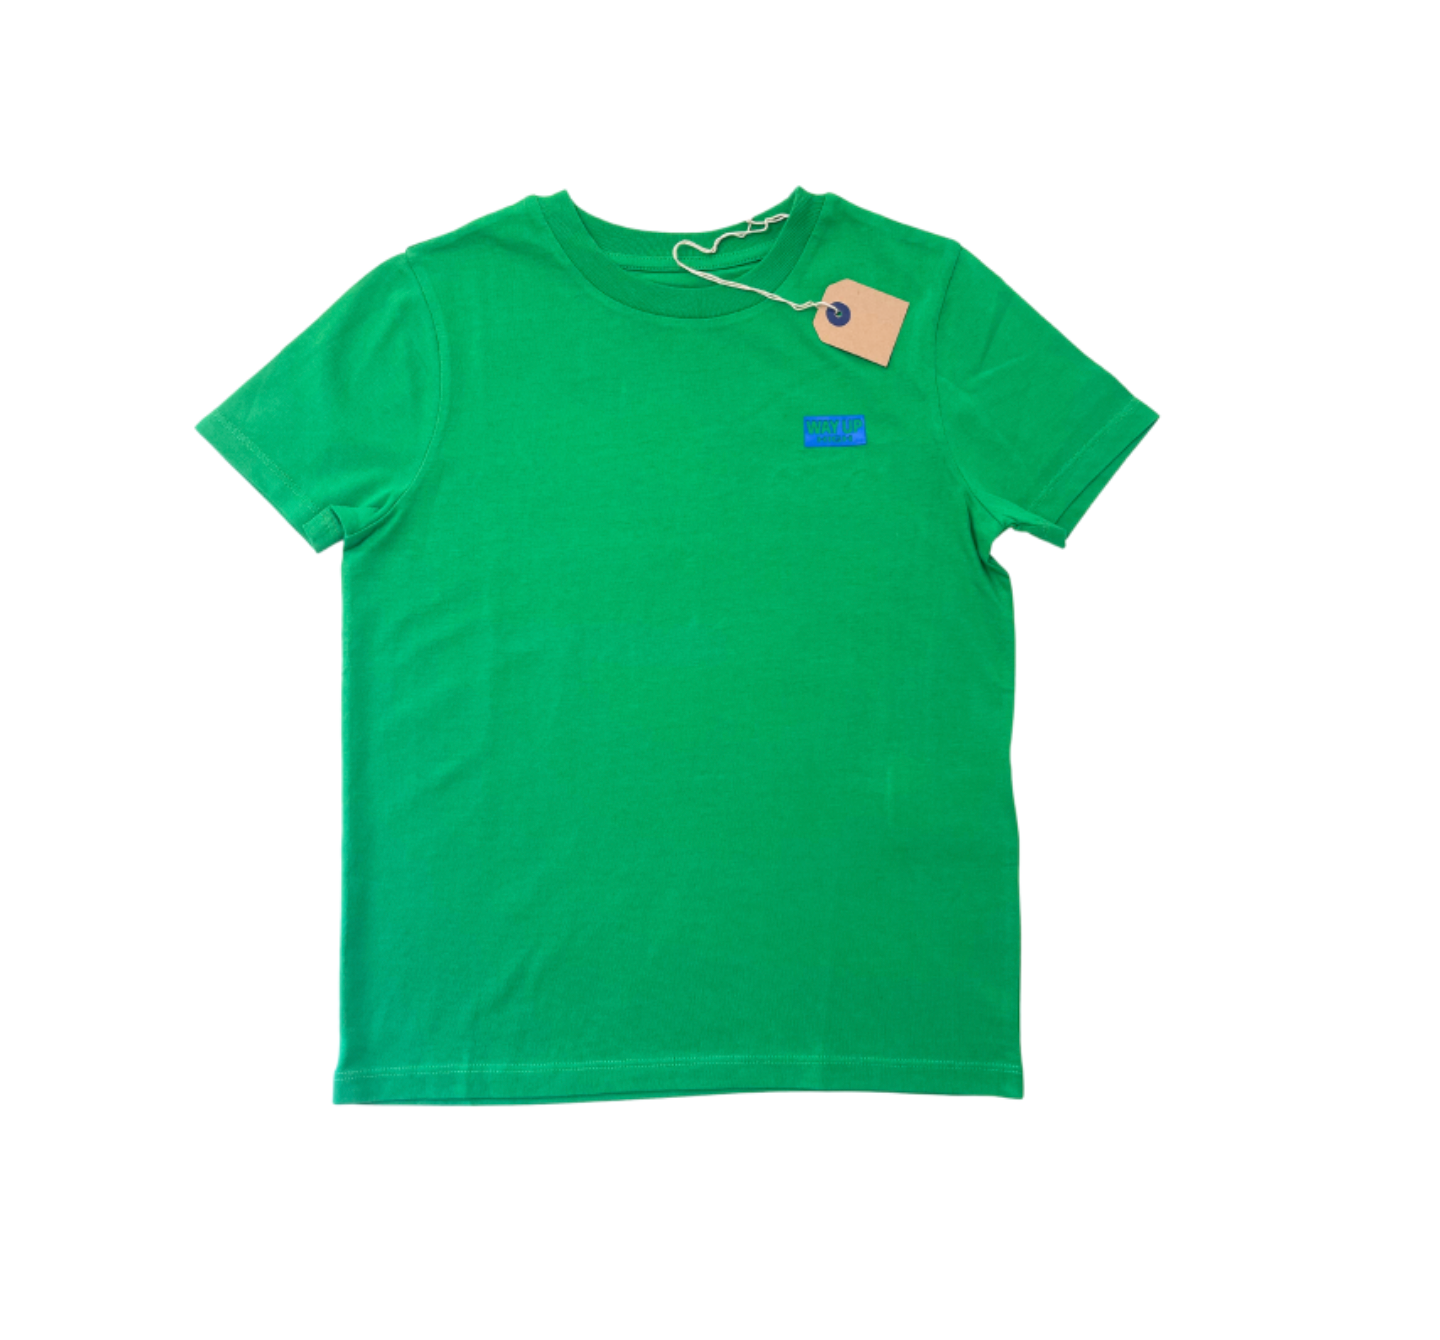 BELLEROSE - T-shirt Vert "Way up high" - 8 ans